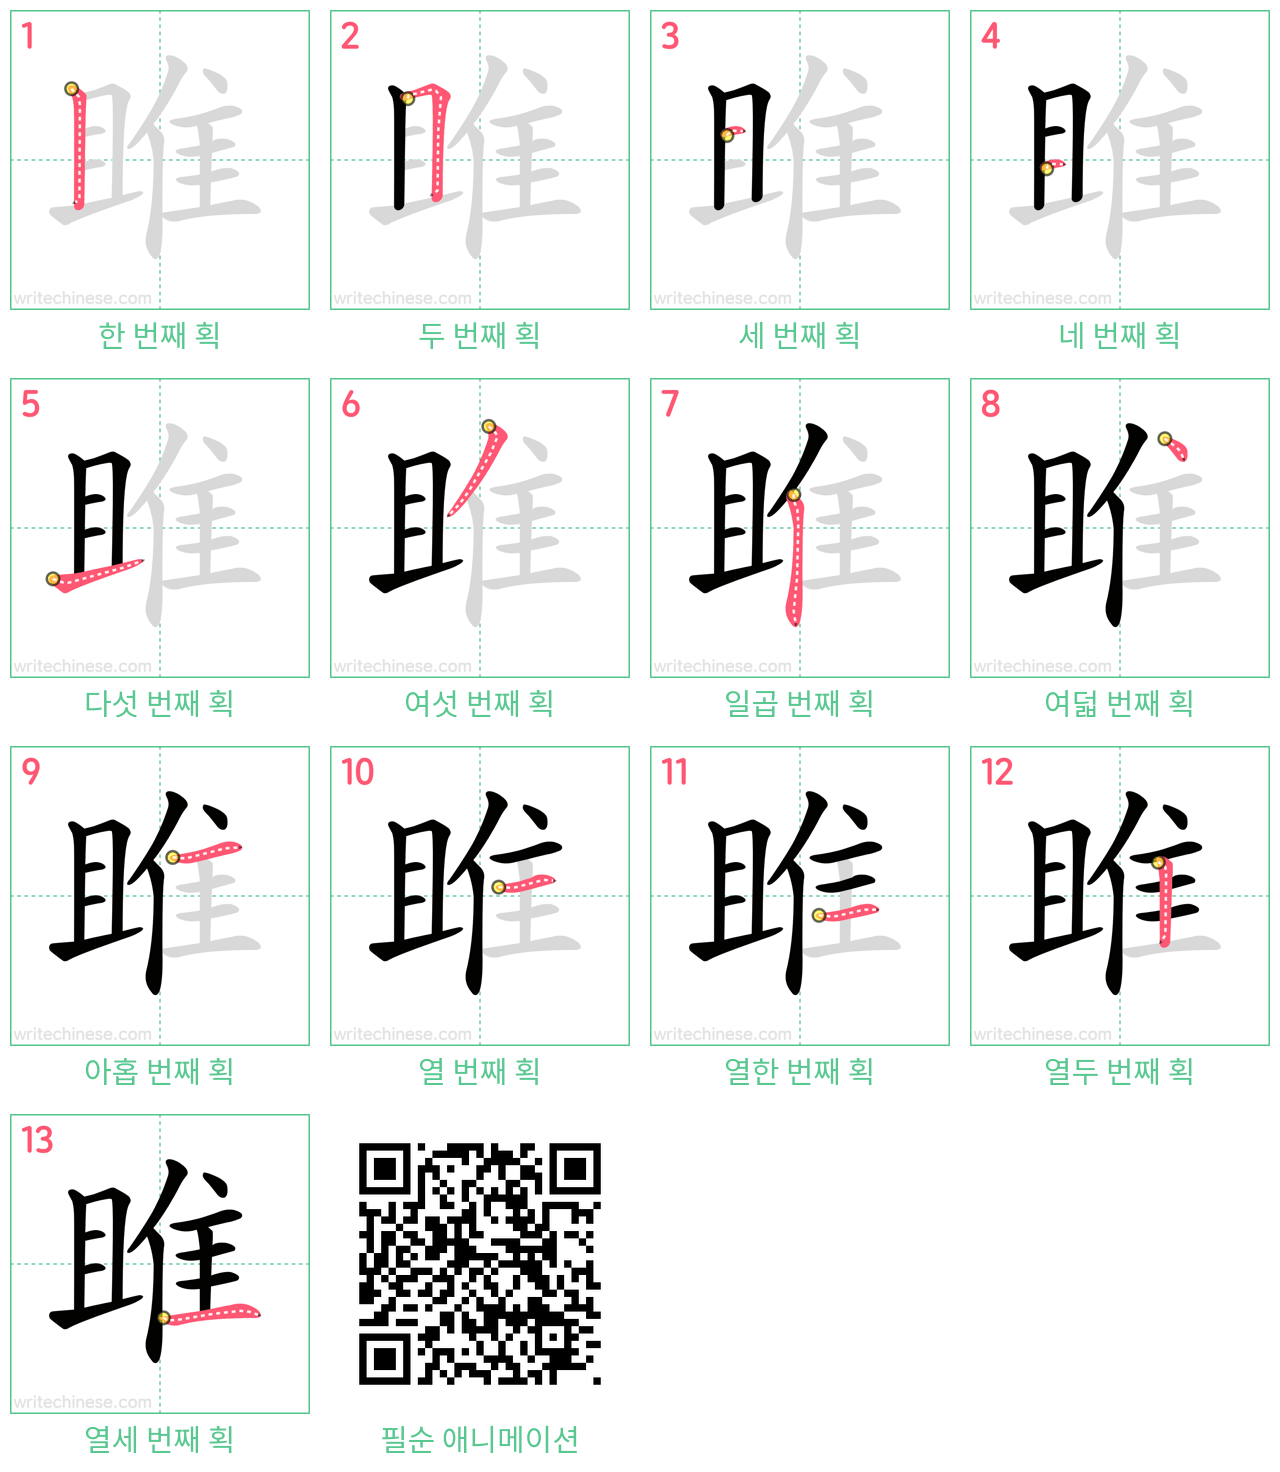 雎 step-by-step stroke order diagrams